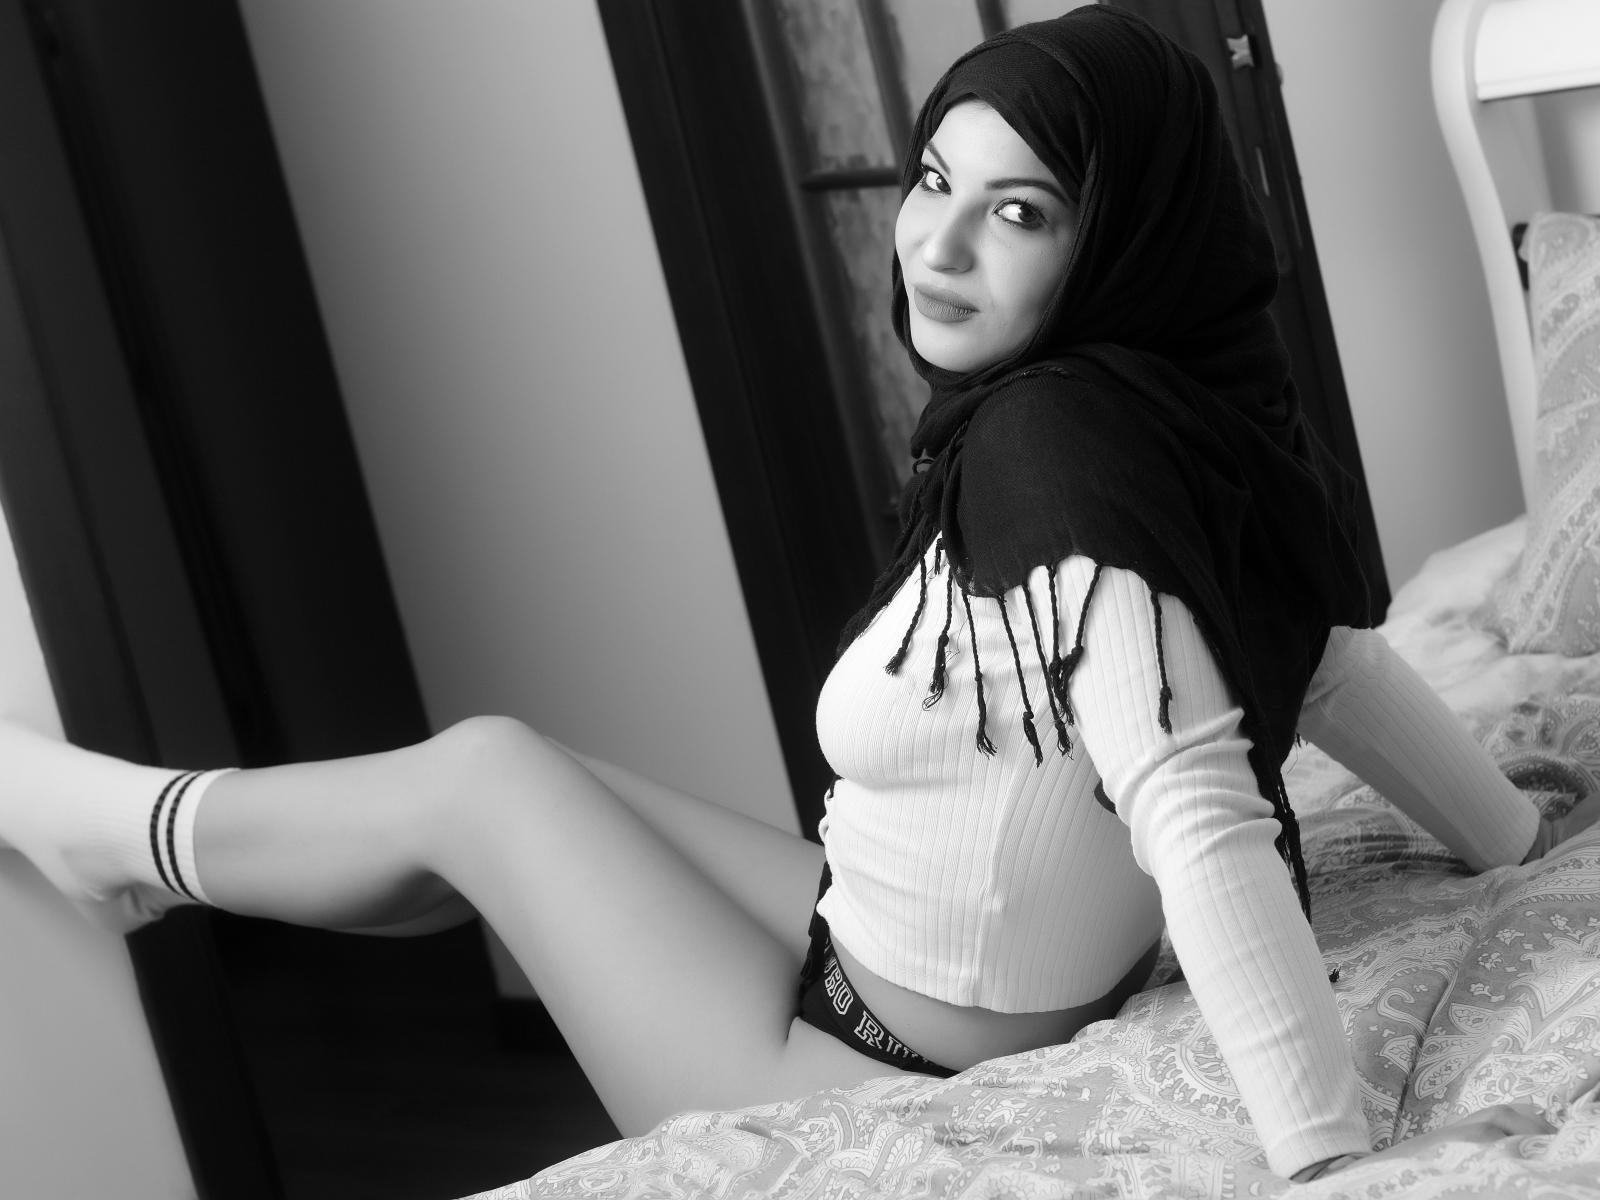 Arab girls hot lingerie